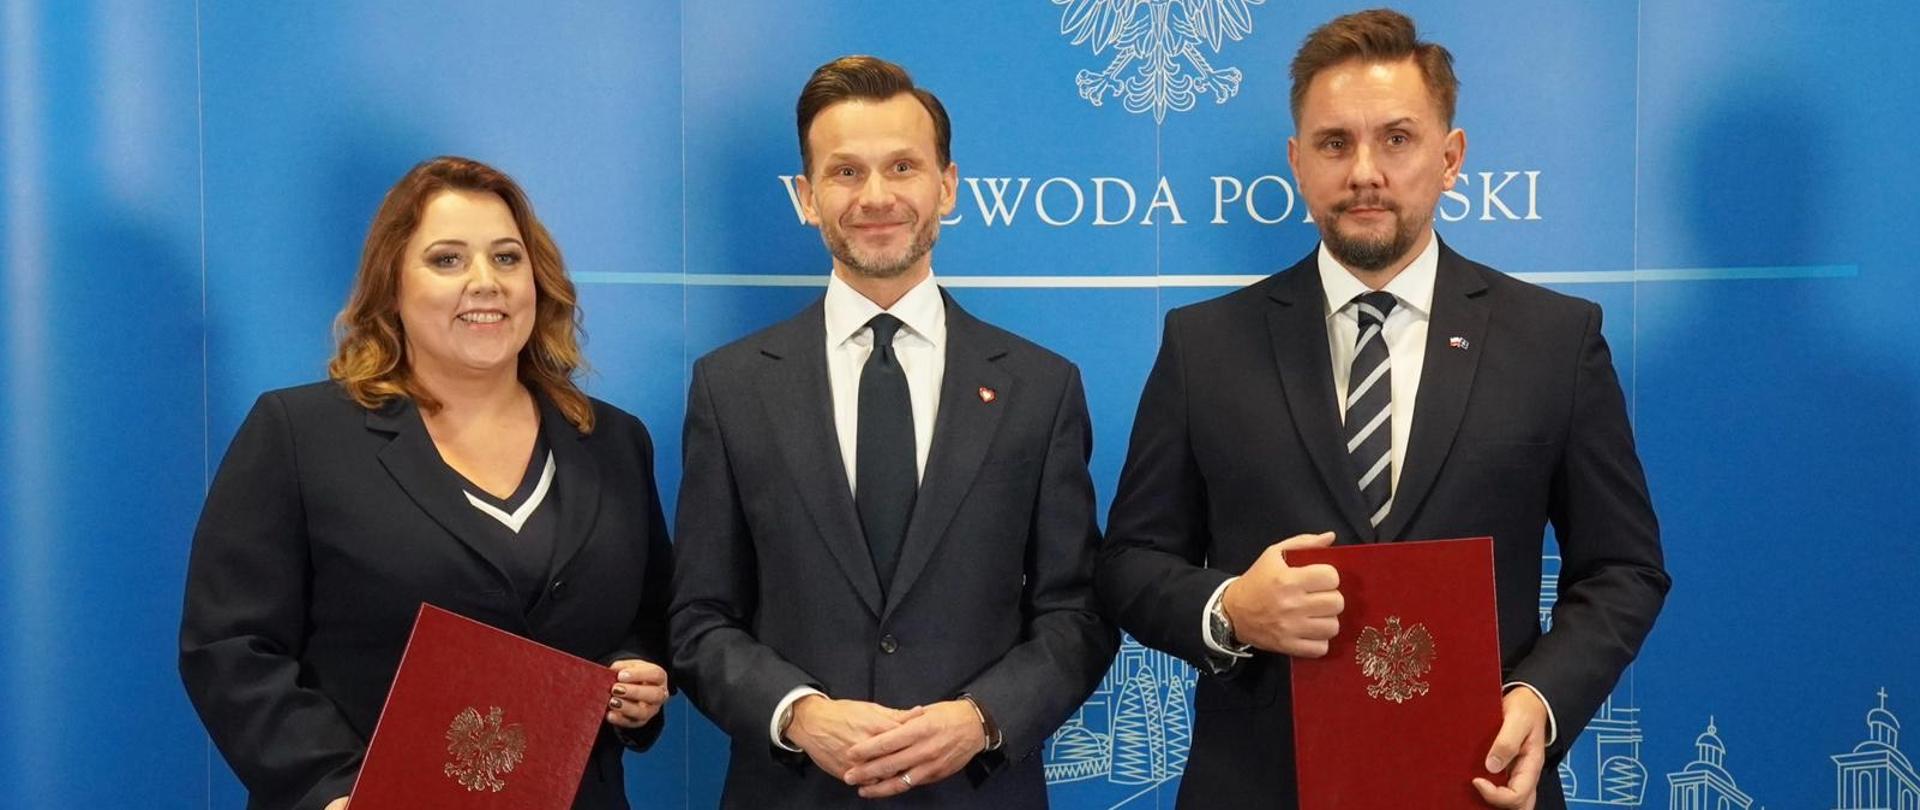 Wojewoda podlaski Jacek Brzozowski oraz I wicewojewoda jest Paweł Krutul i II wicewojewoda Ewa Kulikowska